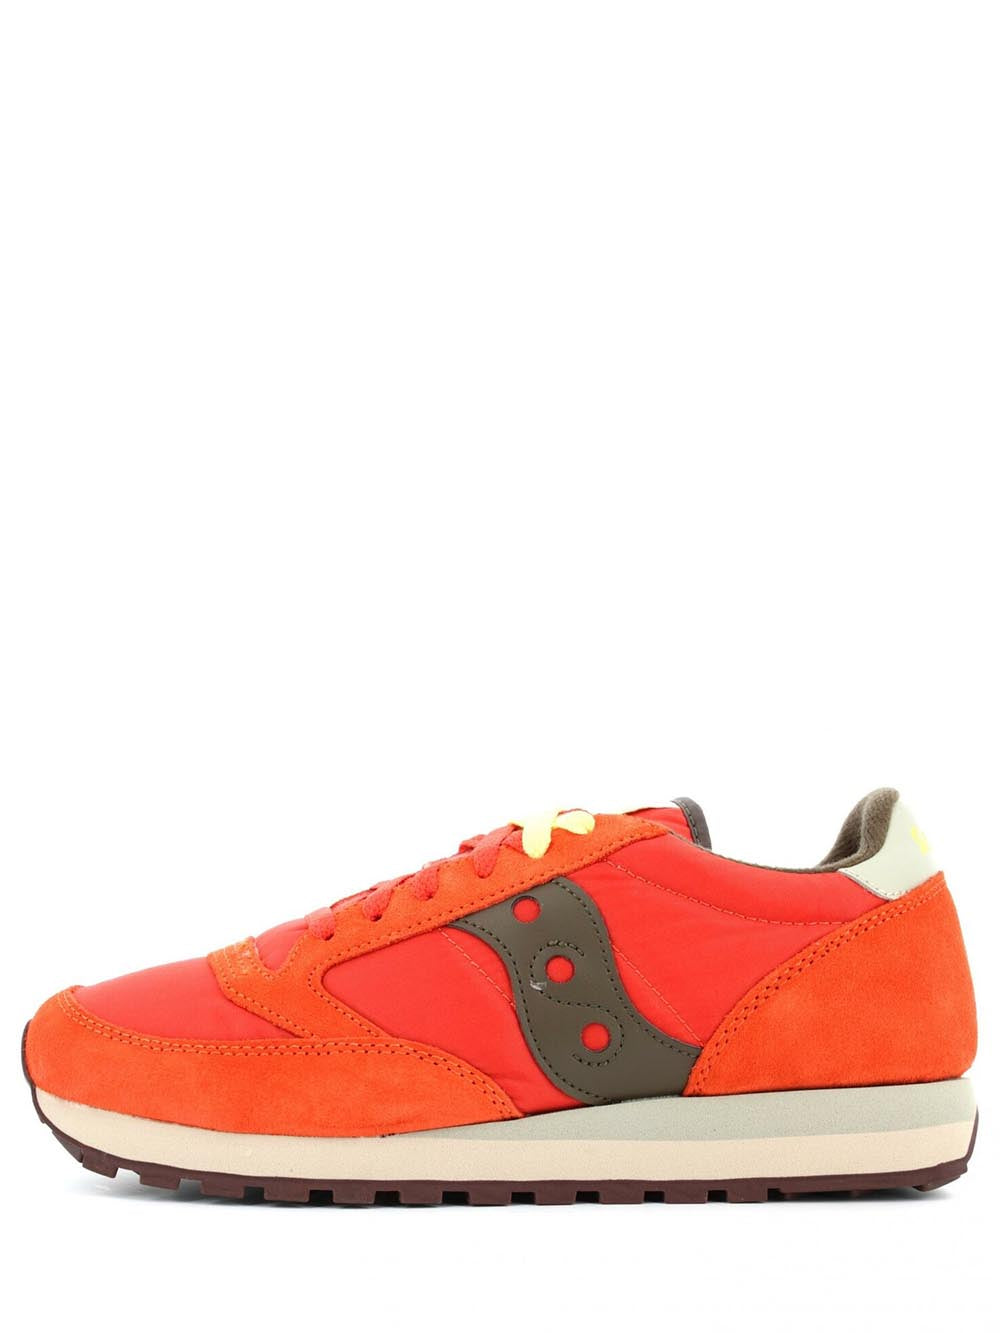 Saucony Sneakers Uomo Arancio/marrone